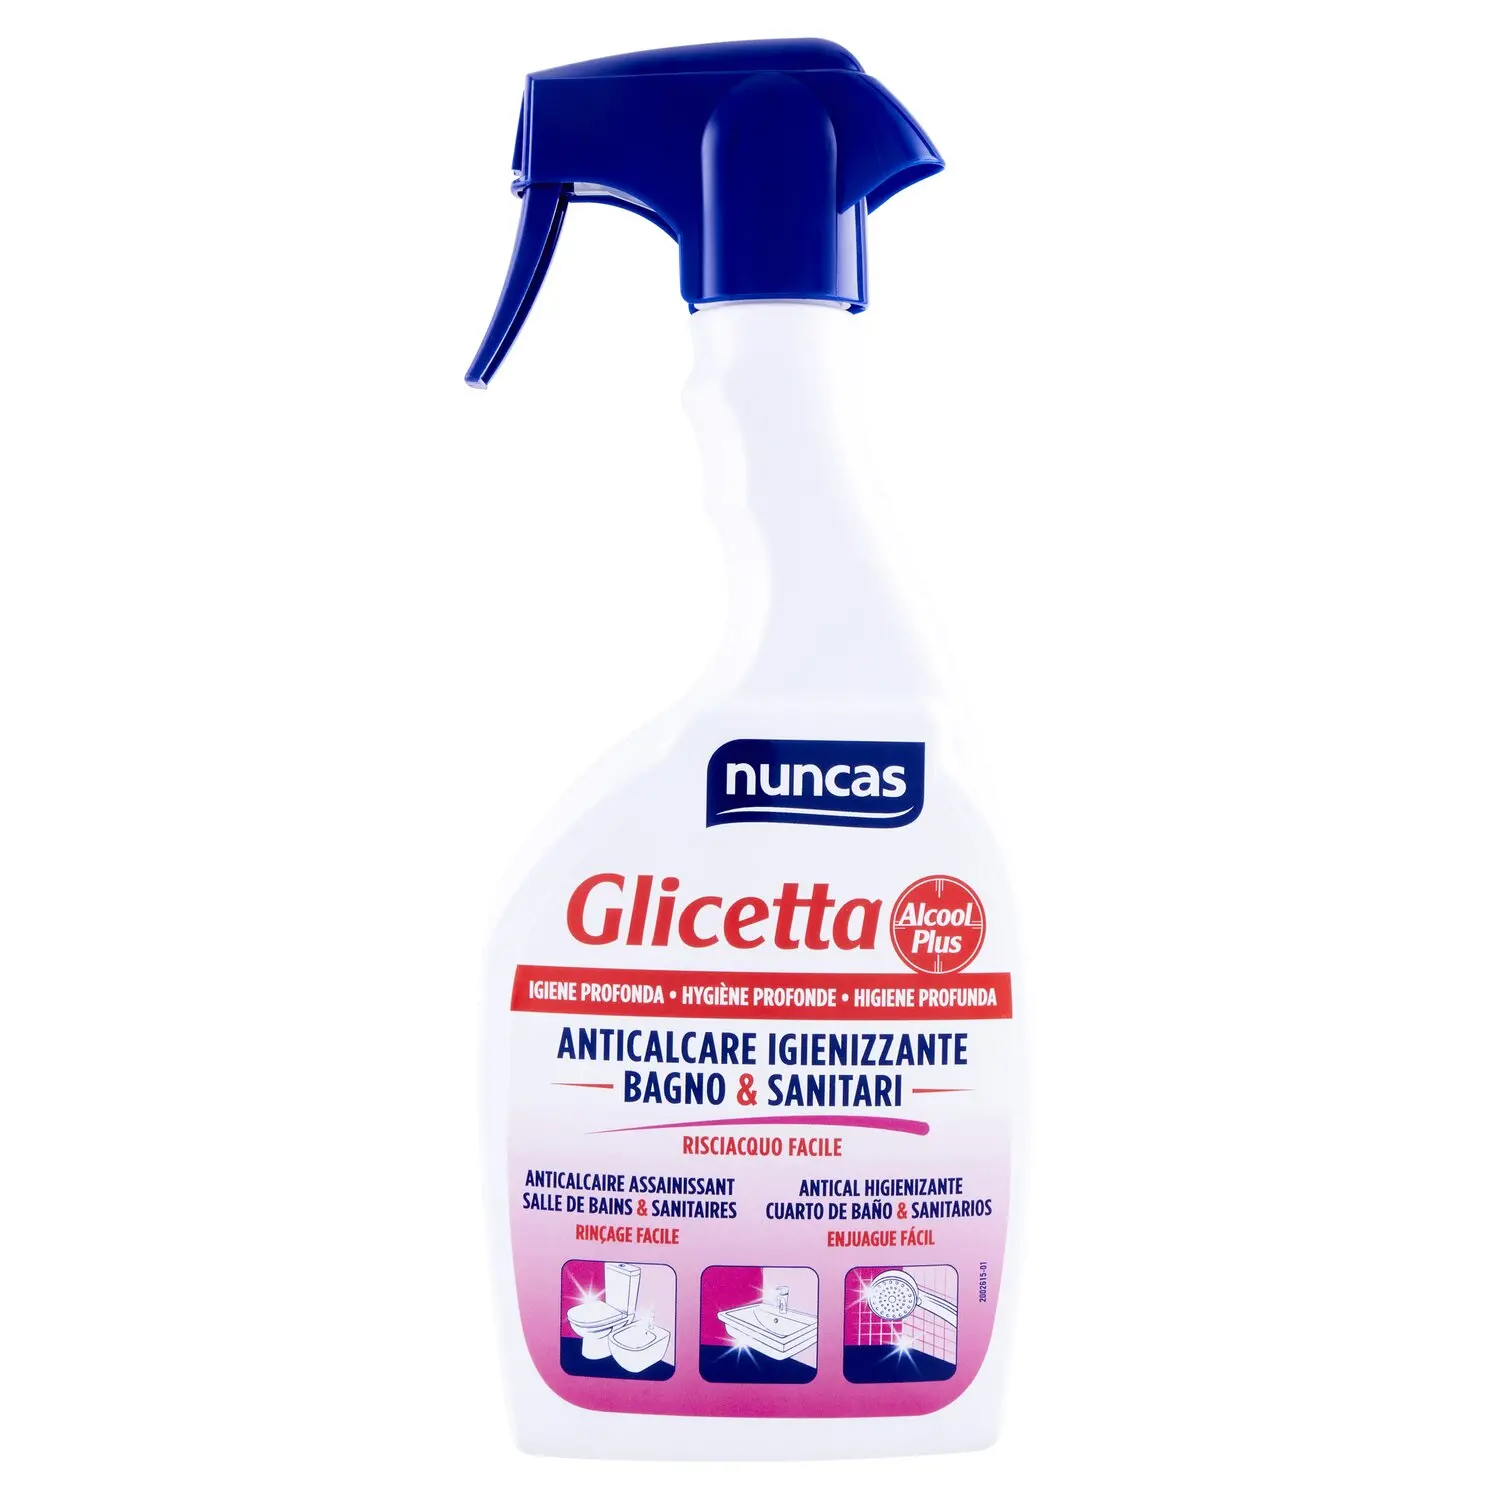 nuncas Glicetta Alcool Plus Anticalcare Igienizzante Bagno & Sanitari 500 ml